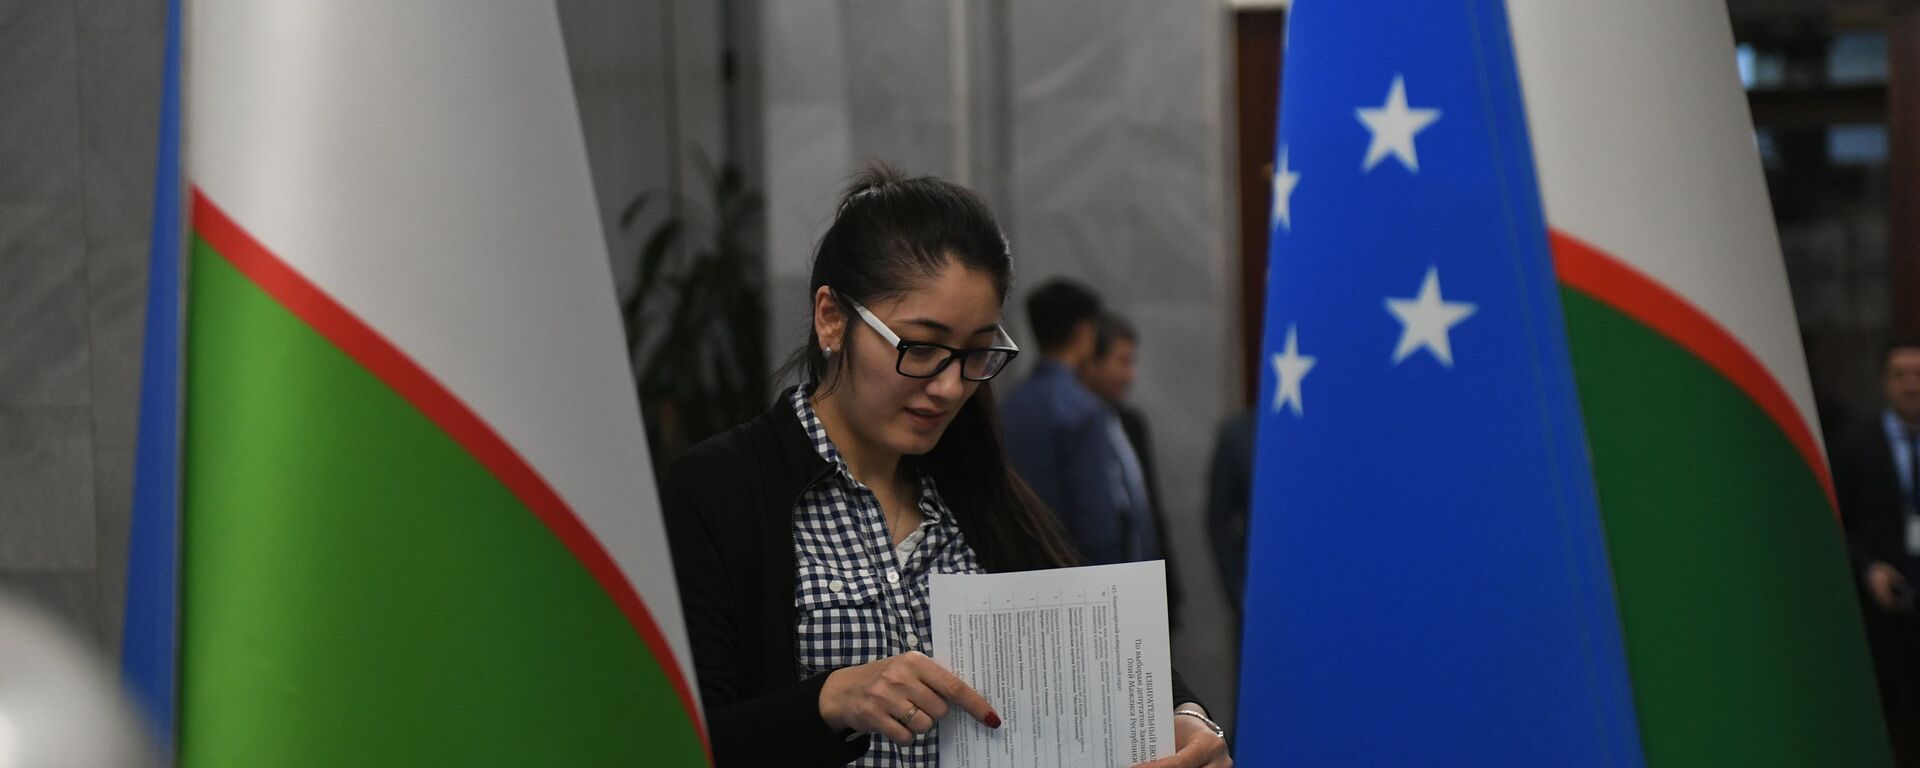 Как голосовали узбекистанцы в Москве на парламентских выборах - Sputnik Ўзбекистон, 1920, 31.05.2021